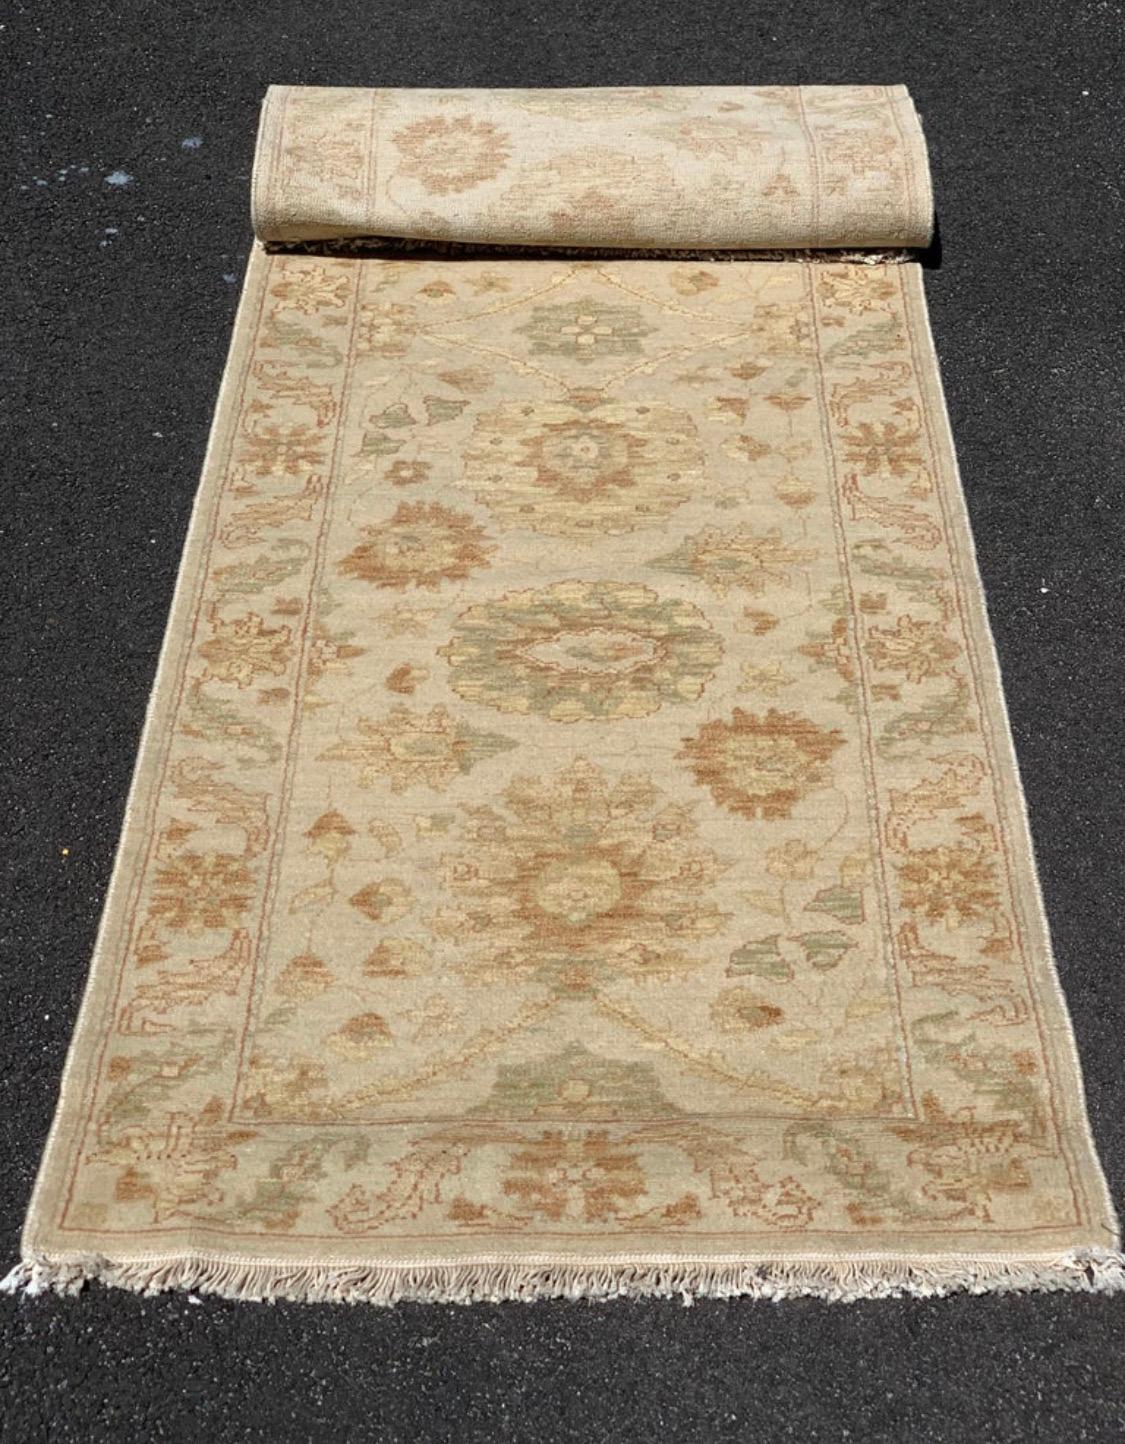 Il s'agit d'un nouveau tapis de style persan à fleurs beige ivoire, long et étroit, datant de la fin du 20e siècle, tissé à la main à Alexandrie, en Égypte, dans les années 1990. Nous avons fabriqué ces tapis et le design et les couleurs ont été